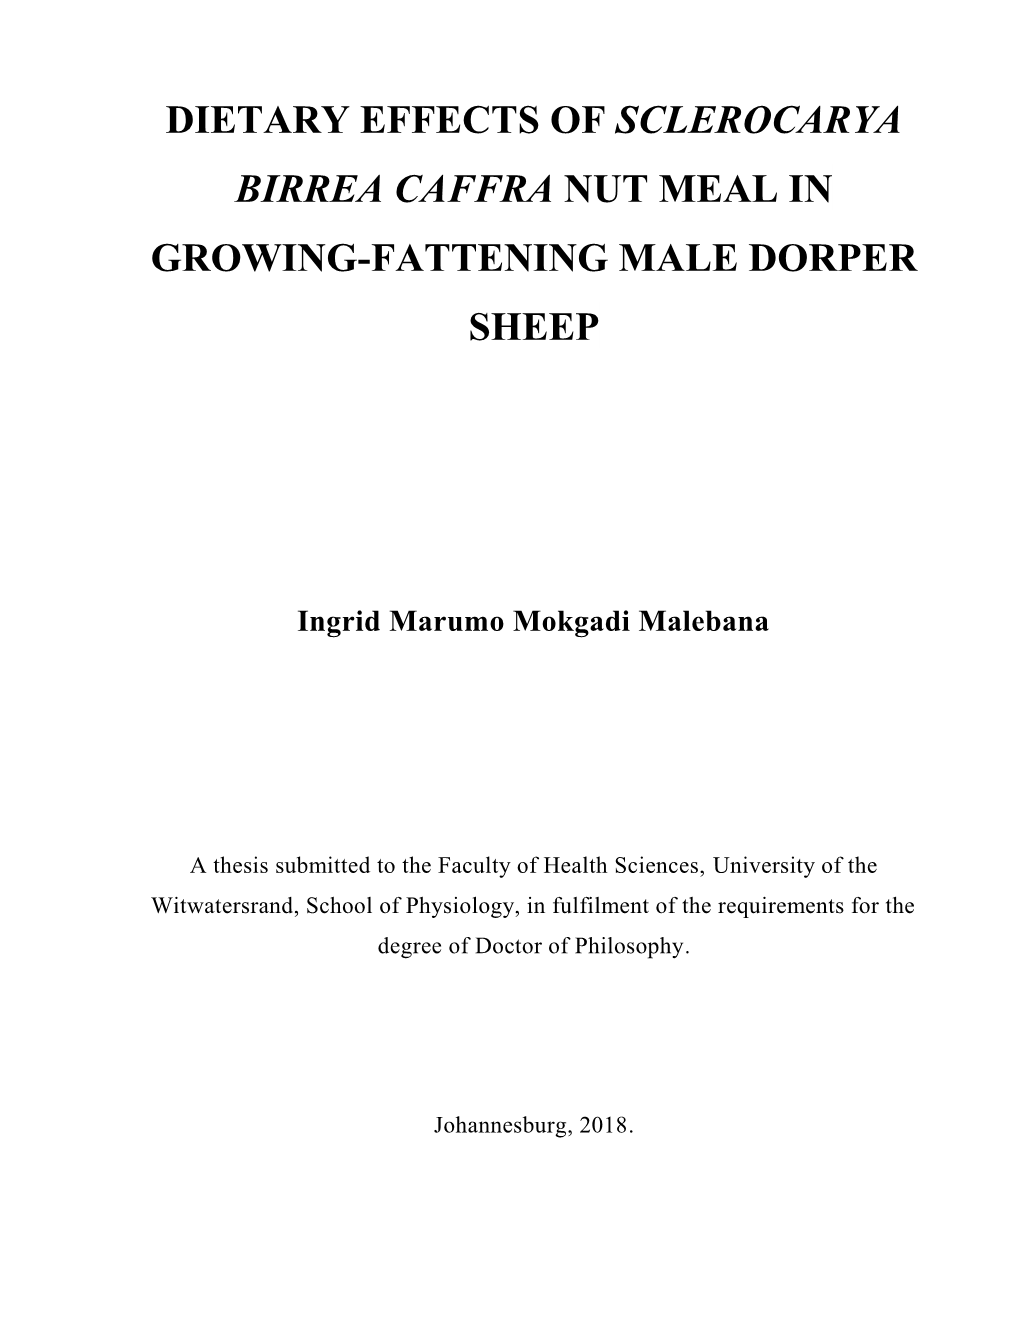 Dietary Effects of Sclerocarya Birrea Caffra Nut Meal in Growing-Fattening Male Dorper Sheep